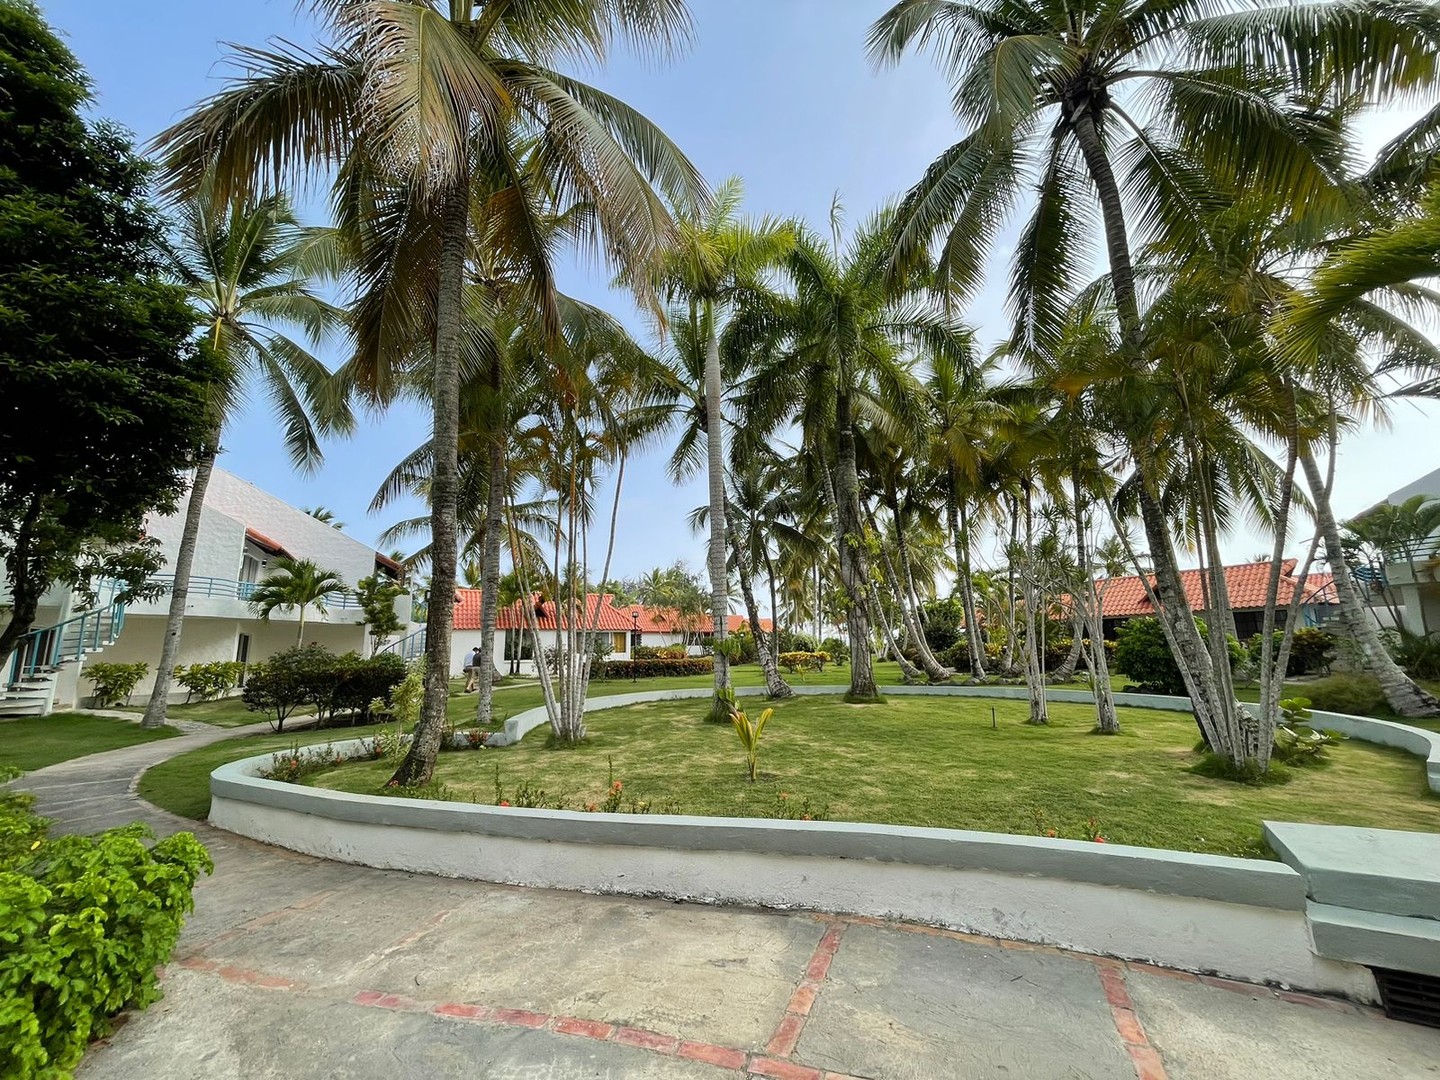 casas vacacionales y villas - Vendo Villa en Complejo Turístico en Boca Chica en 1er Línea de Mar
CÓDI: PD259